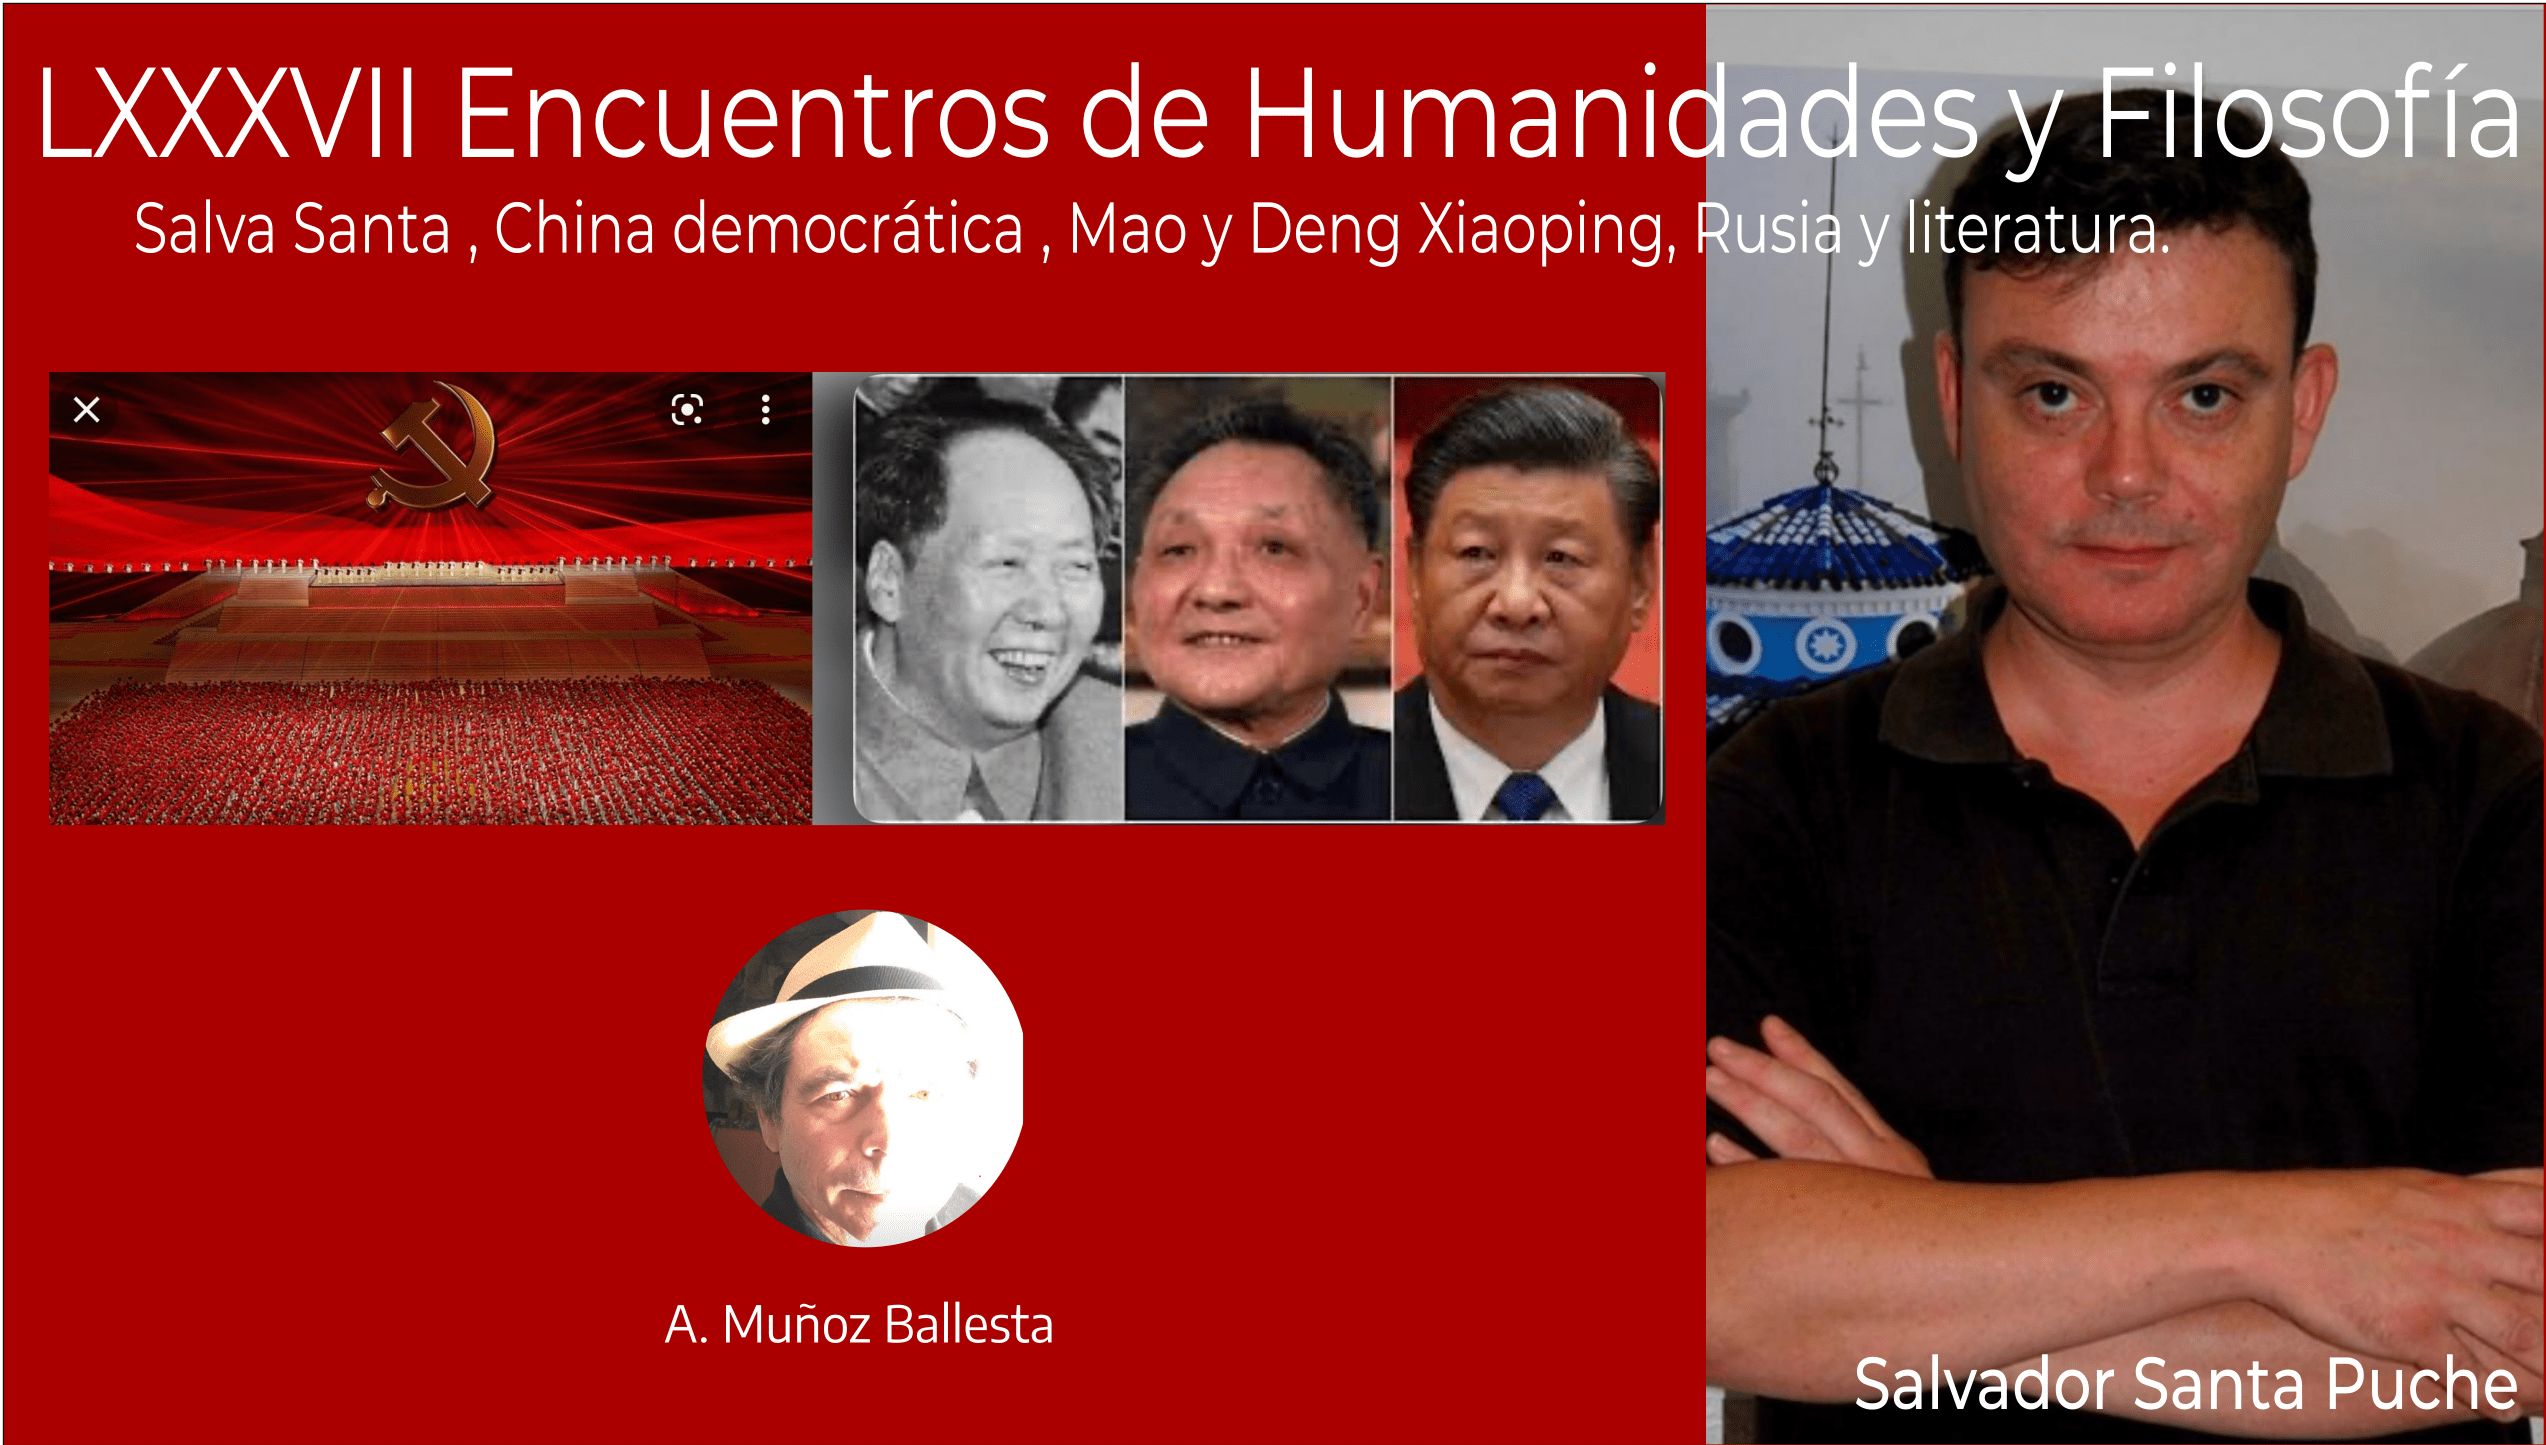  LXXXVII Encuentros Humanidades y Filosofía,  Salva Santa , China democrática , Mao y Deng Xiaoping, Rusia y literatura.